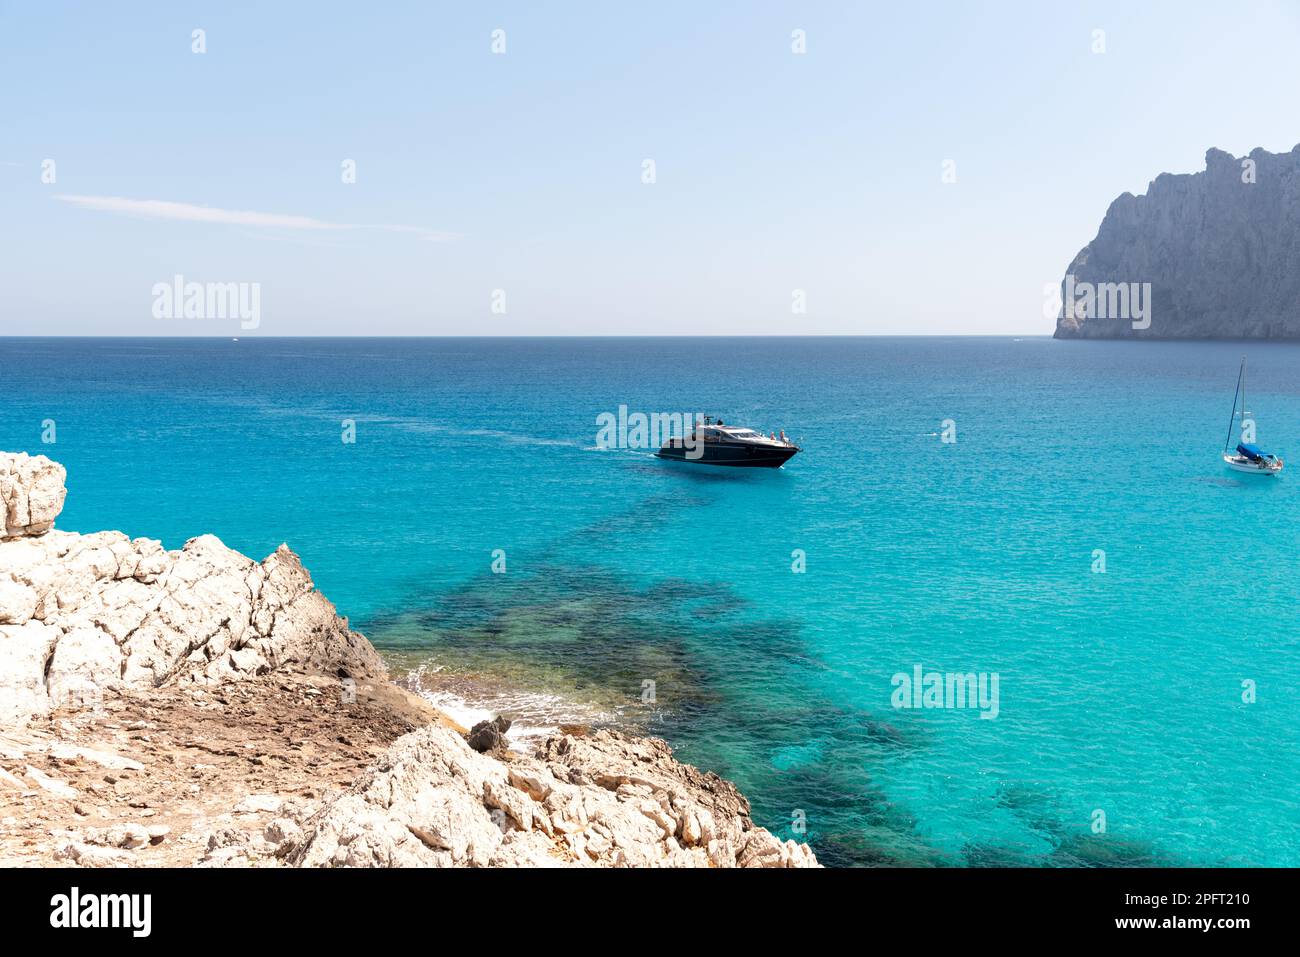 Le aspre scogliere e le acque cristalline di Cala Mesquida a Maiorca, Spagna, offrono uno sfondo mozzafiato per una giornata indimenticabile in spiaggia Foto Stock